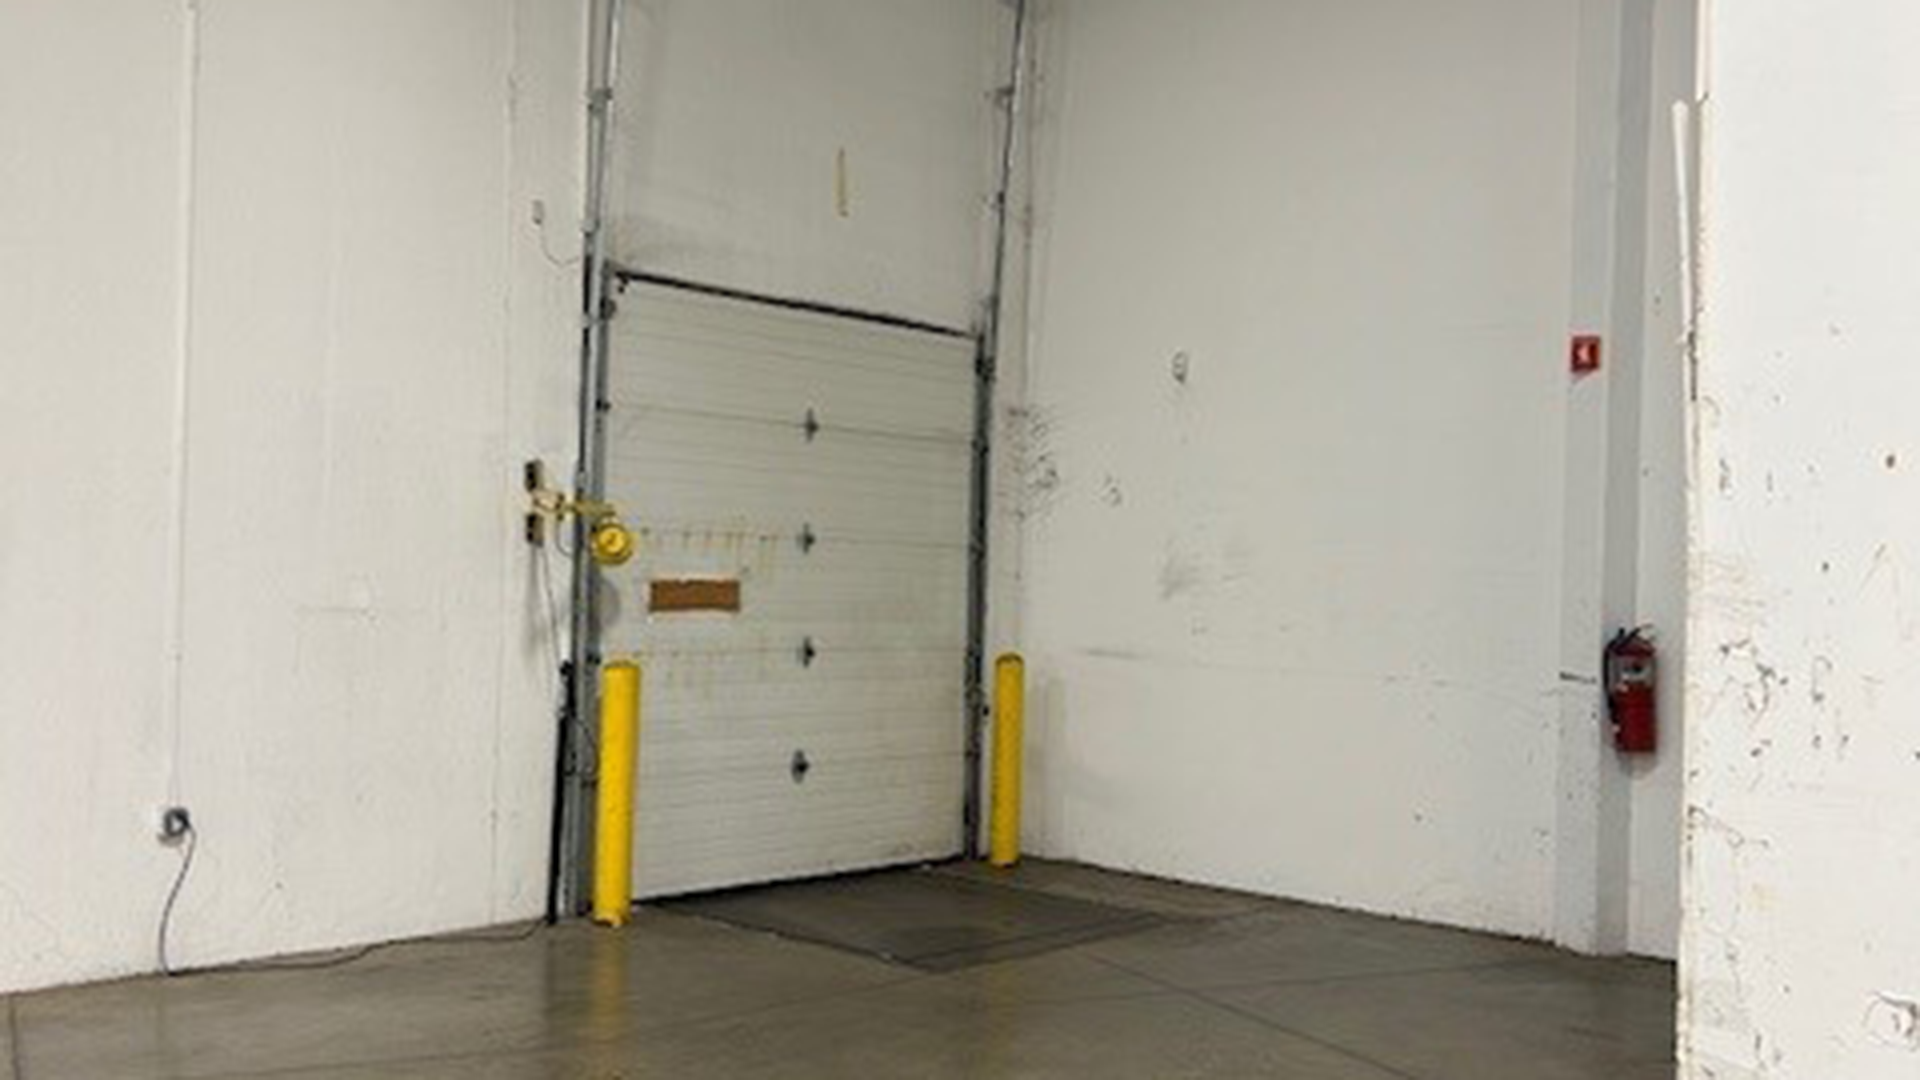 Inside shot of loading dock 